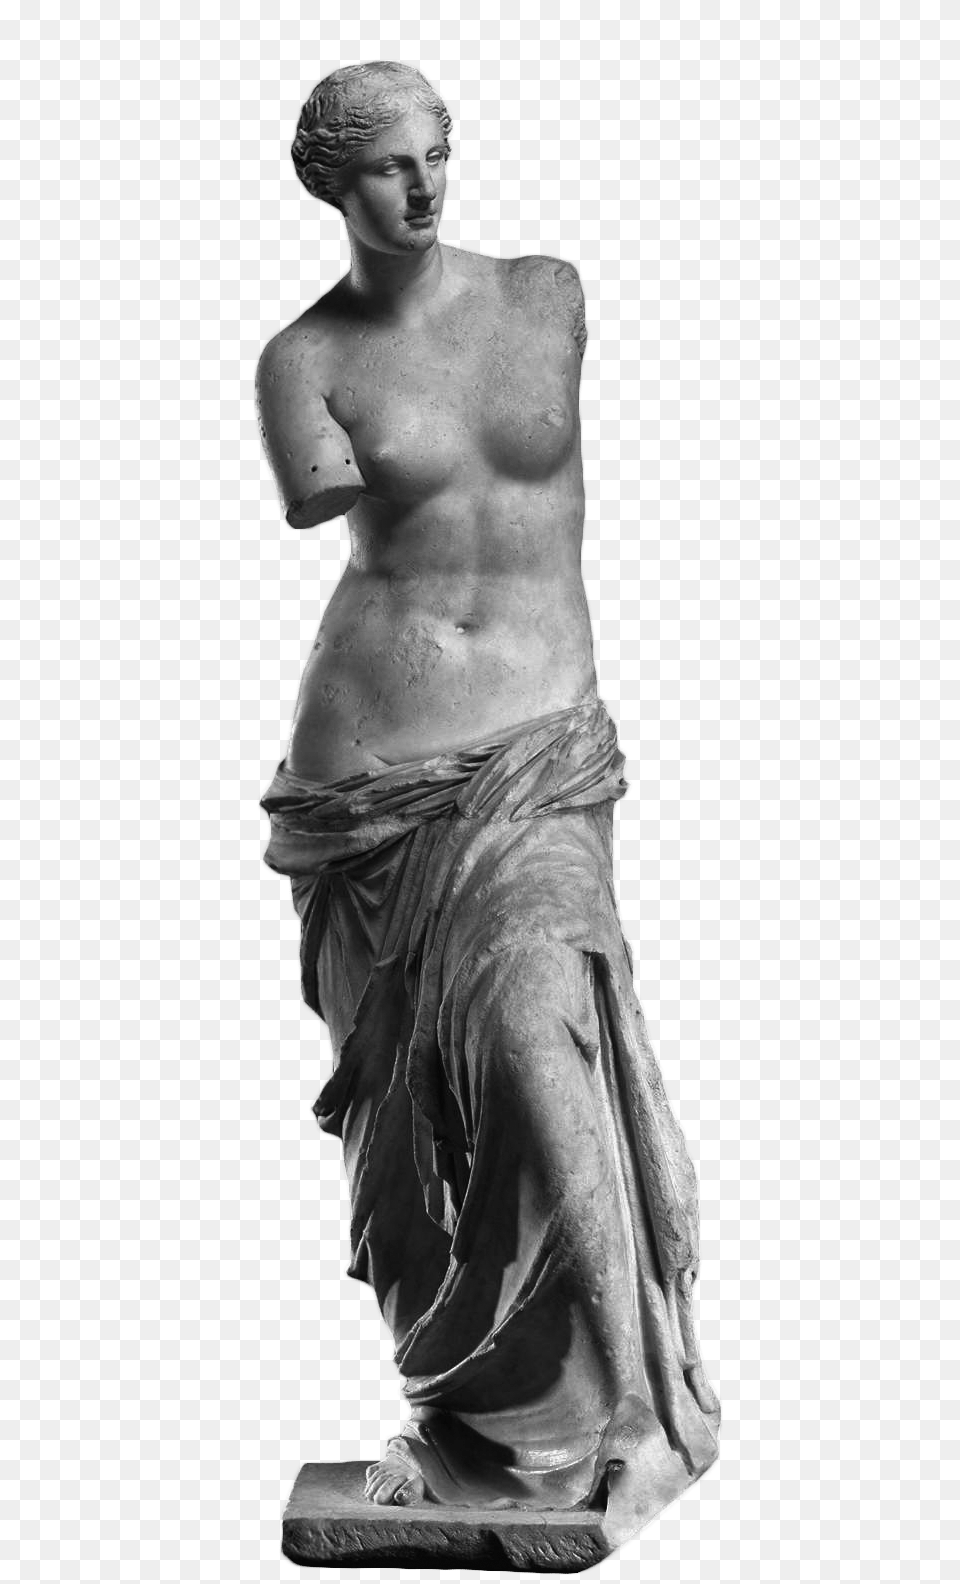 Venus De Milo, Art, Adult, Male, Man Free Transparent Png